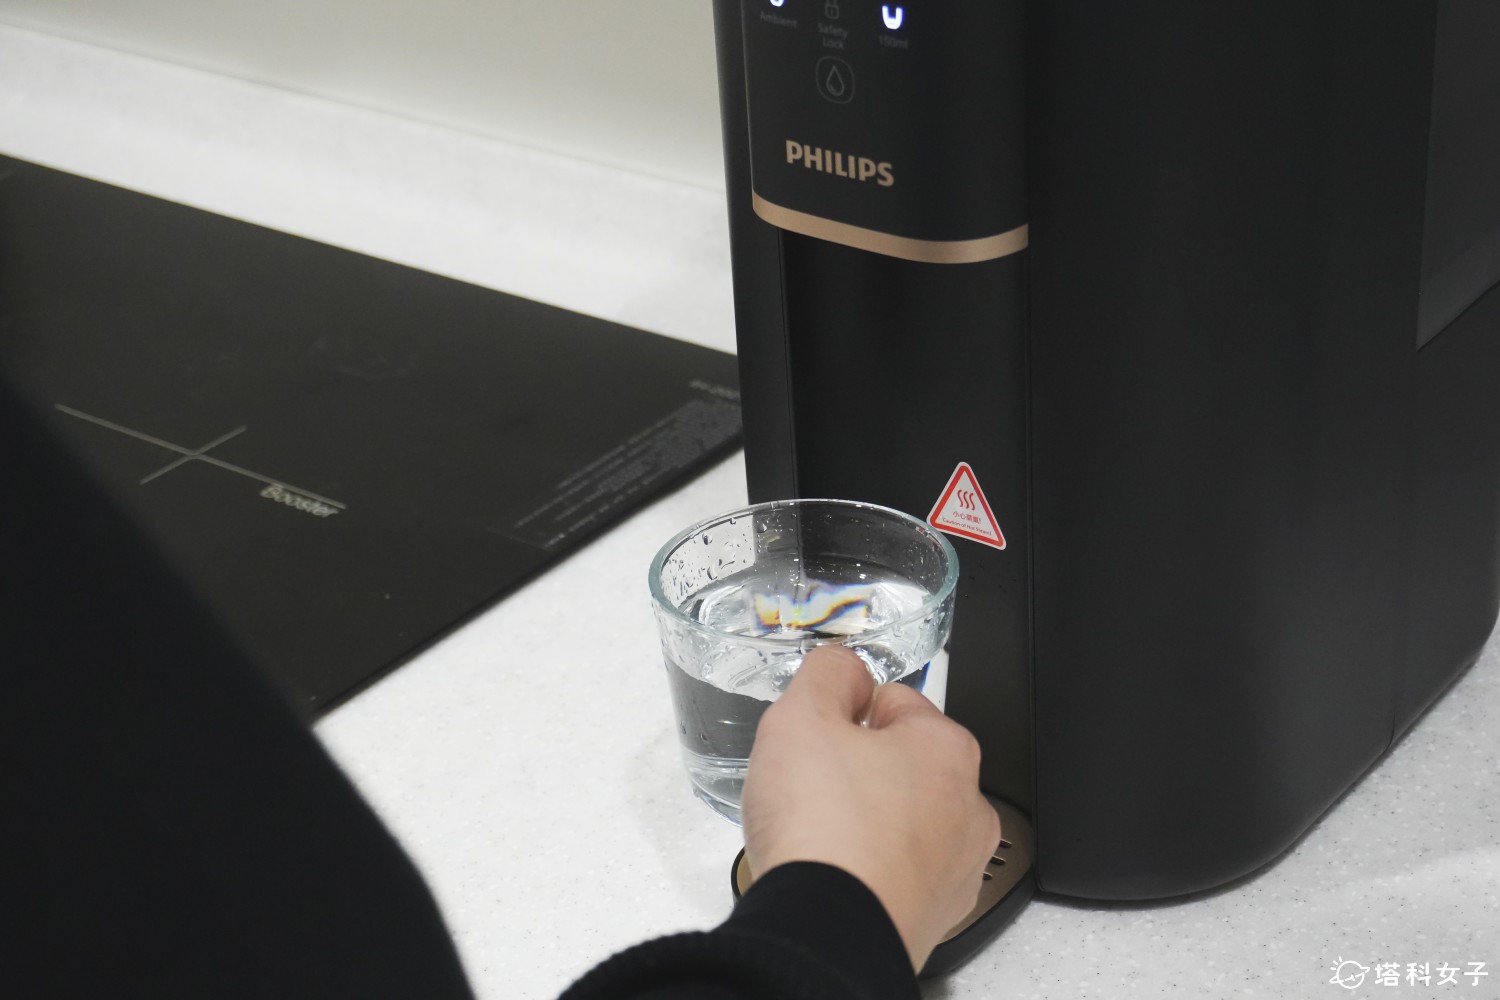 Philips 飛利浦瞬熱式水通道蛋白RO淨飲機評價